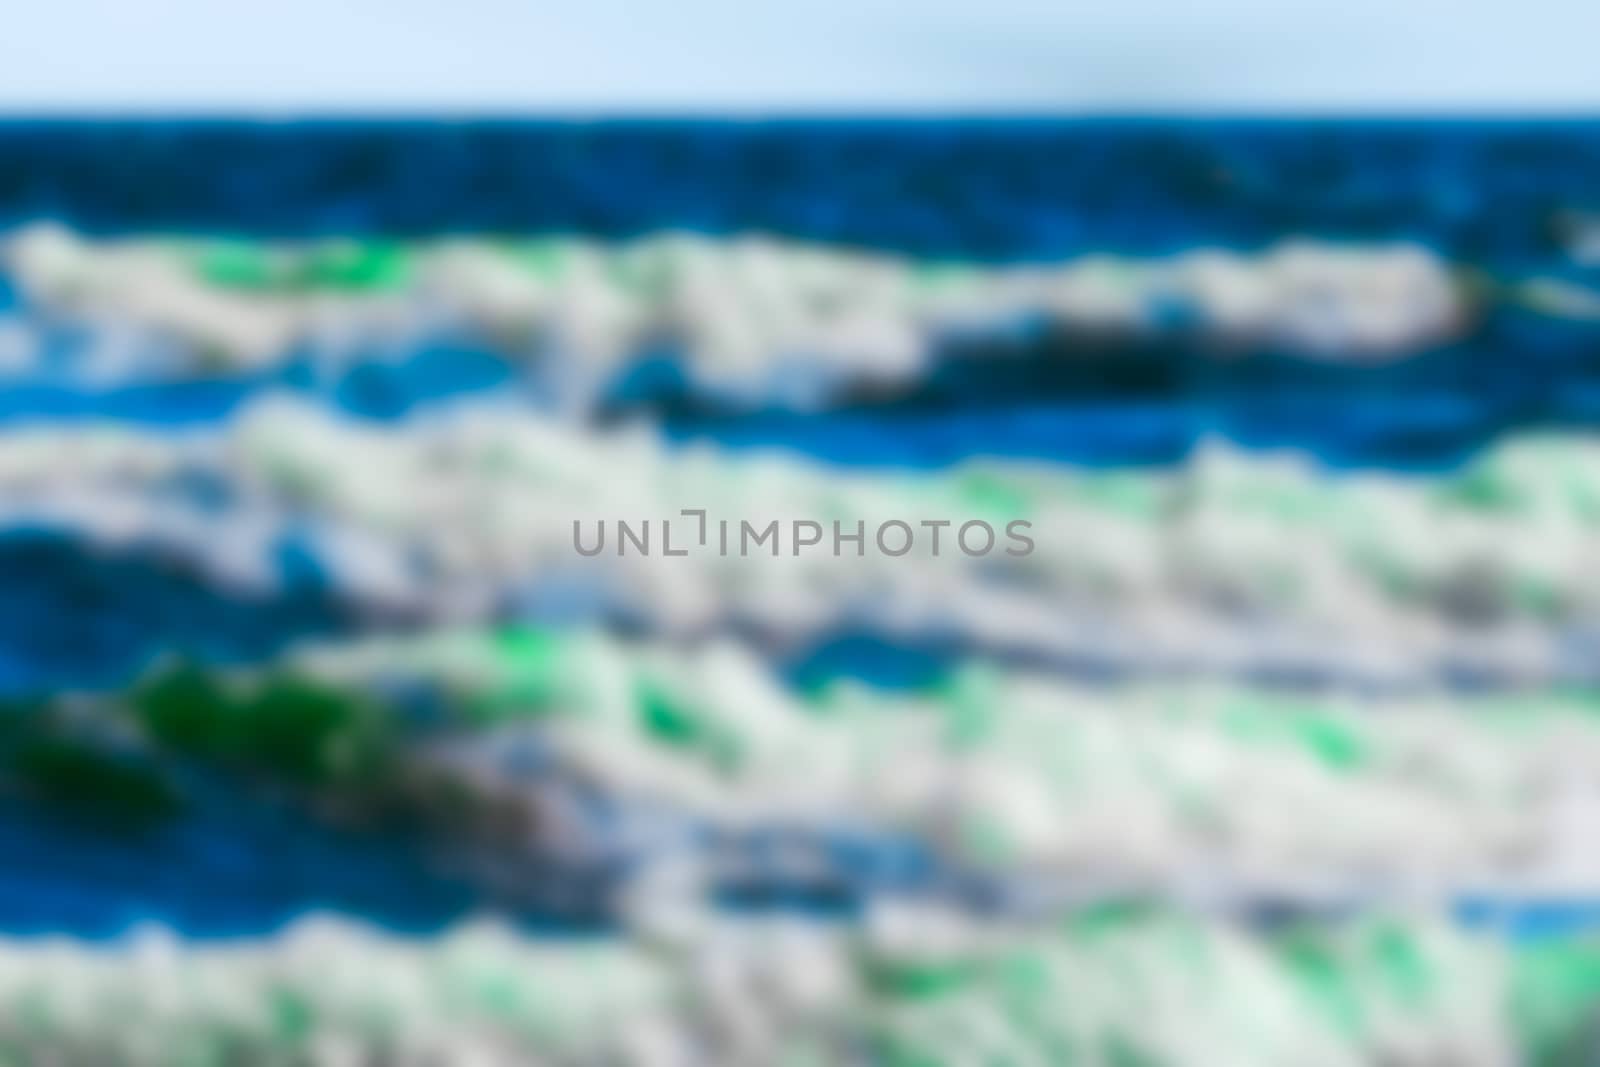 Ocean wawes - blurred image by sengnsp